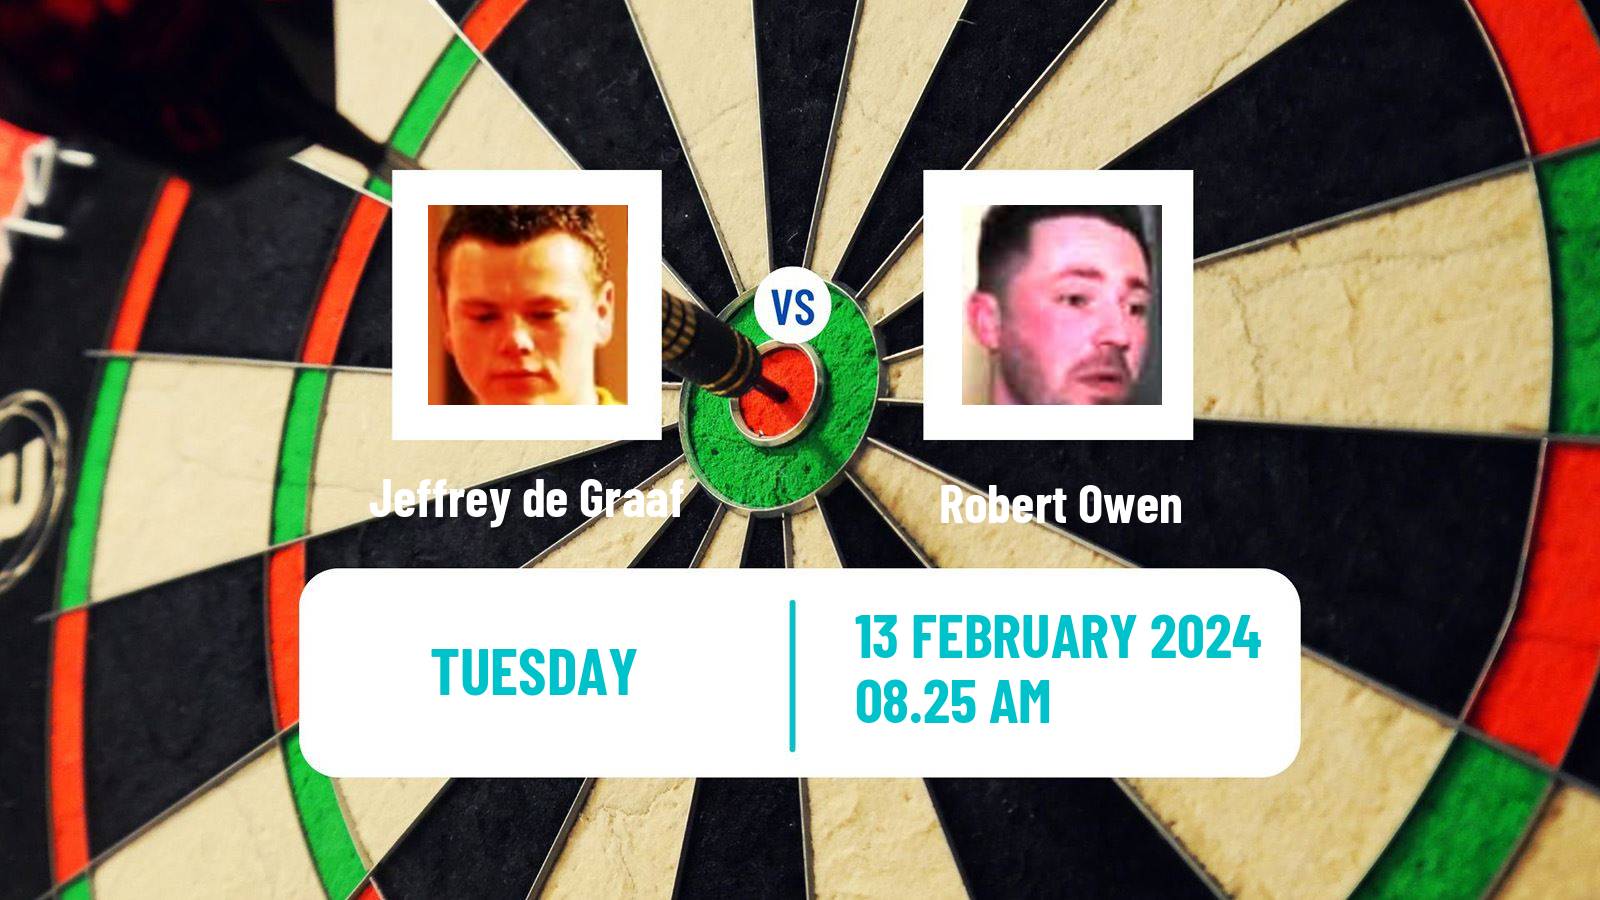 Darts Players Championship 2 Jeffrey de Graaf - Robert Owen